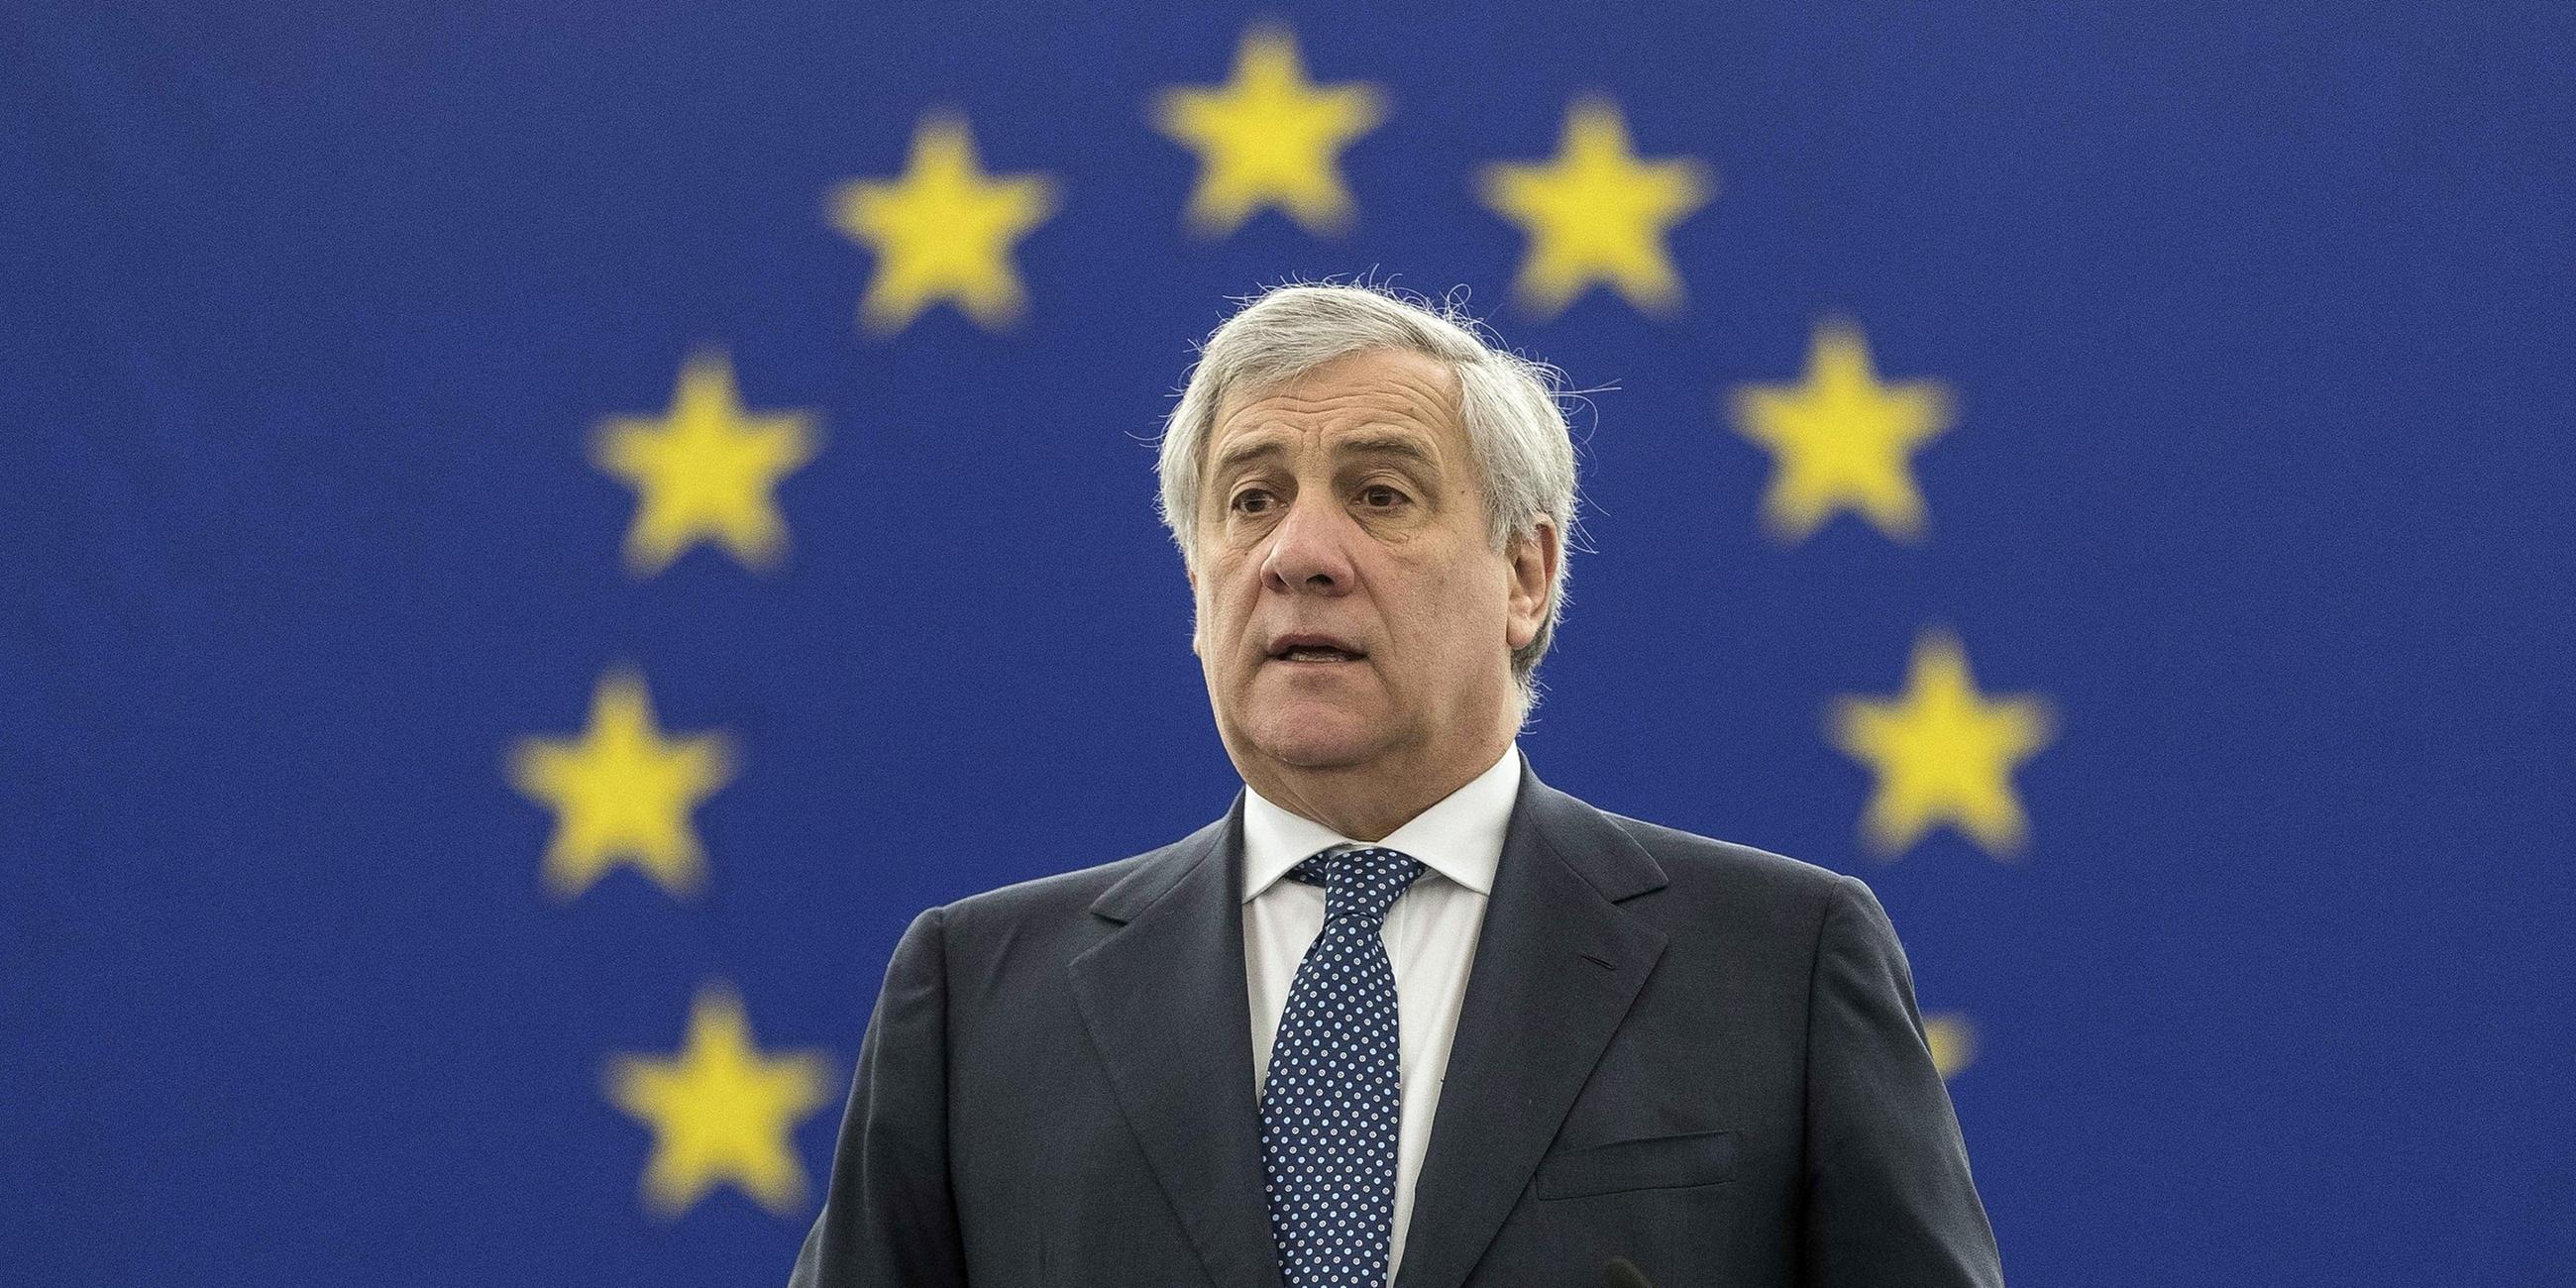 Antonio Tajani ist Präsident des Europäischen Parlaments.